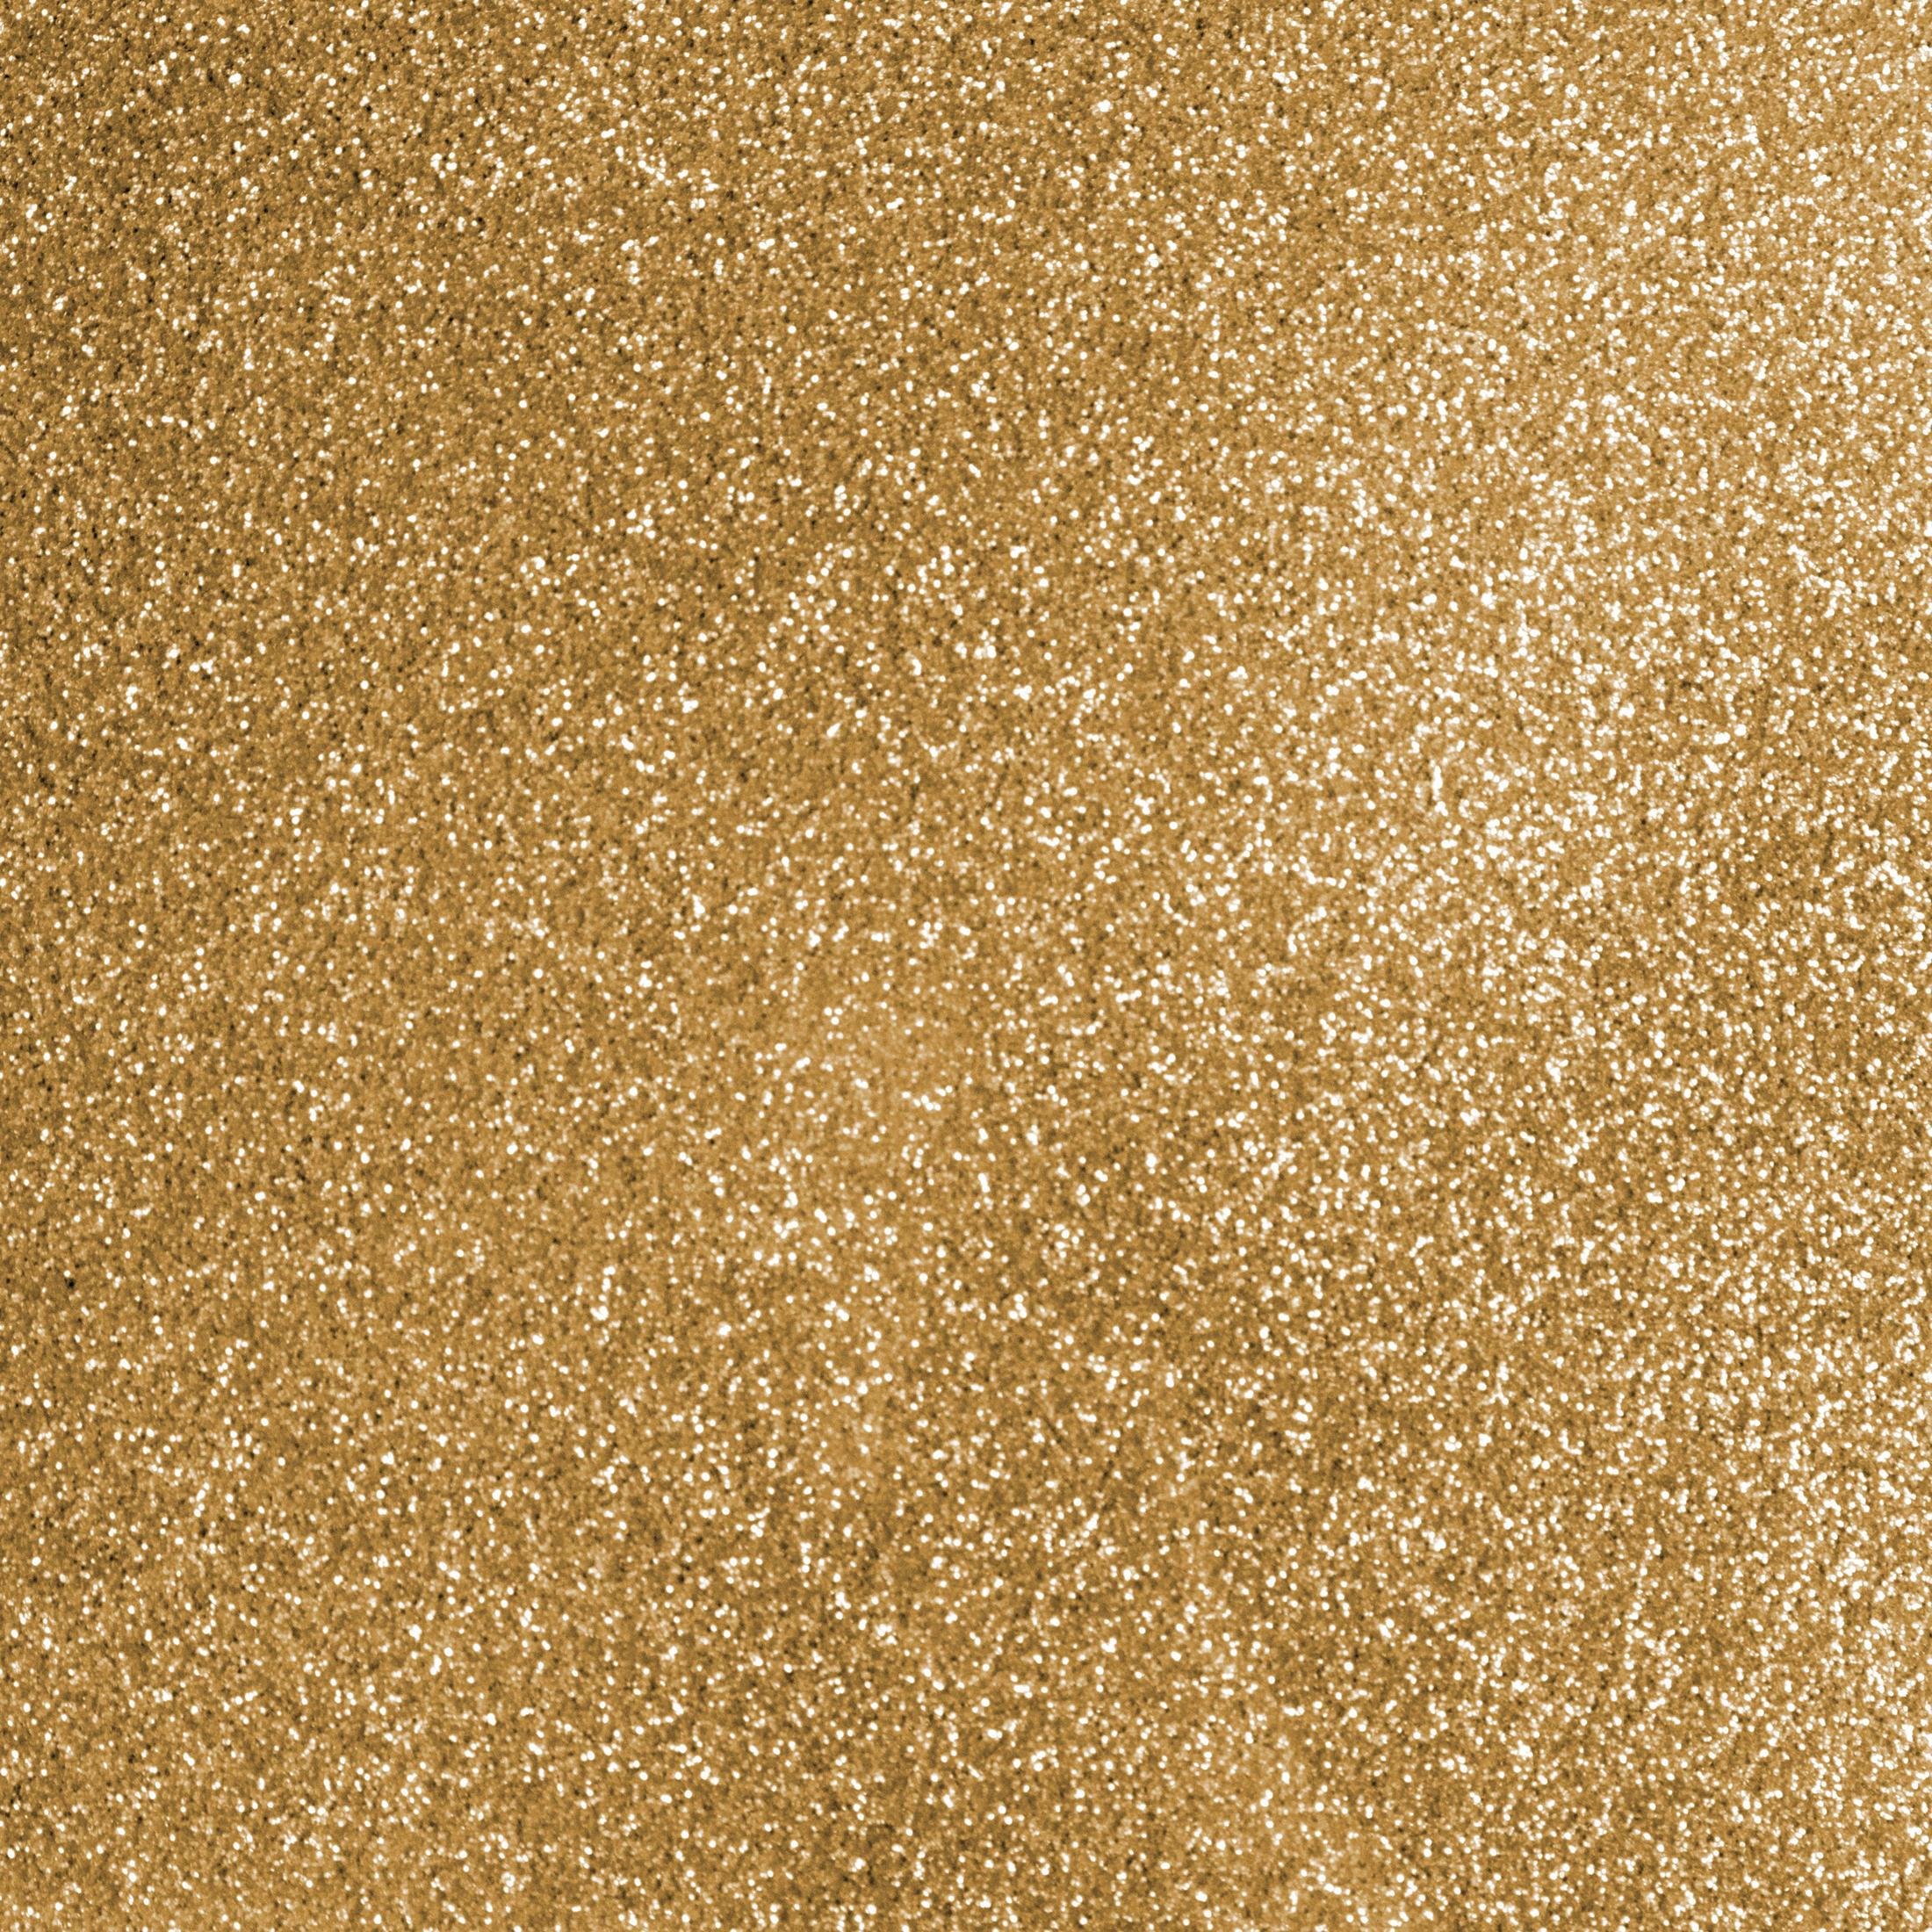 CRICUT GOLD Bügelfolie Gold 2008673 SHEET GLITTER Glitter SIO 1